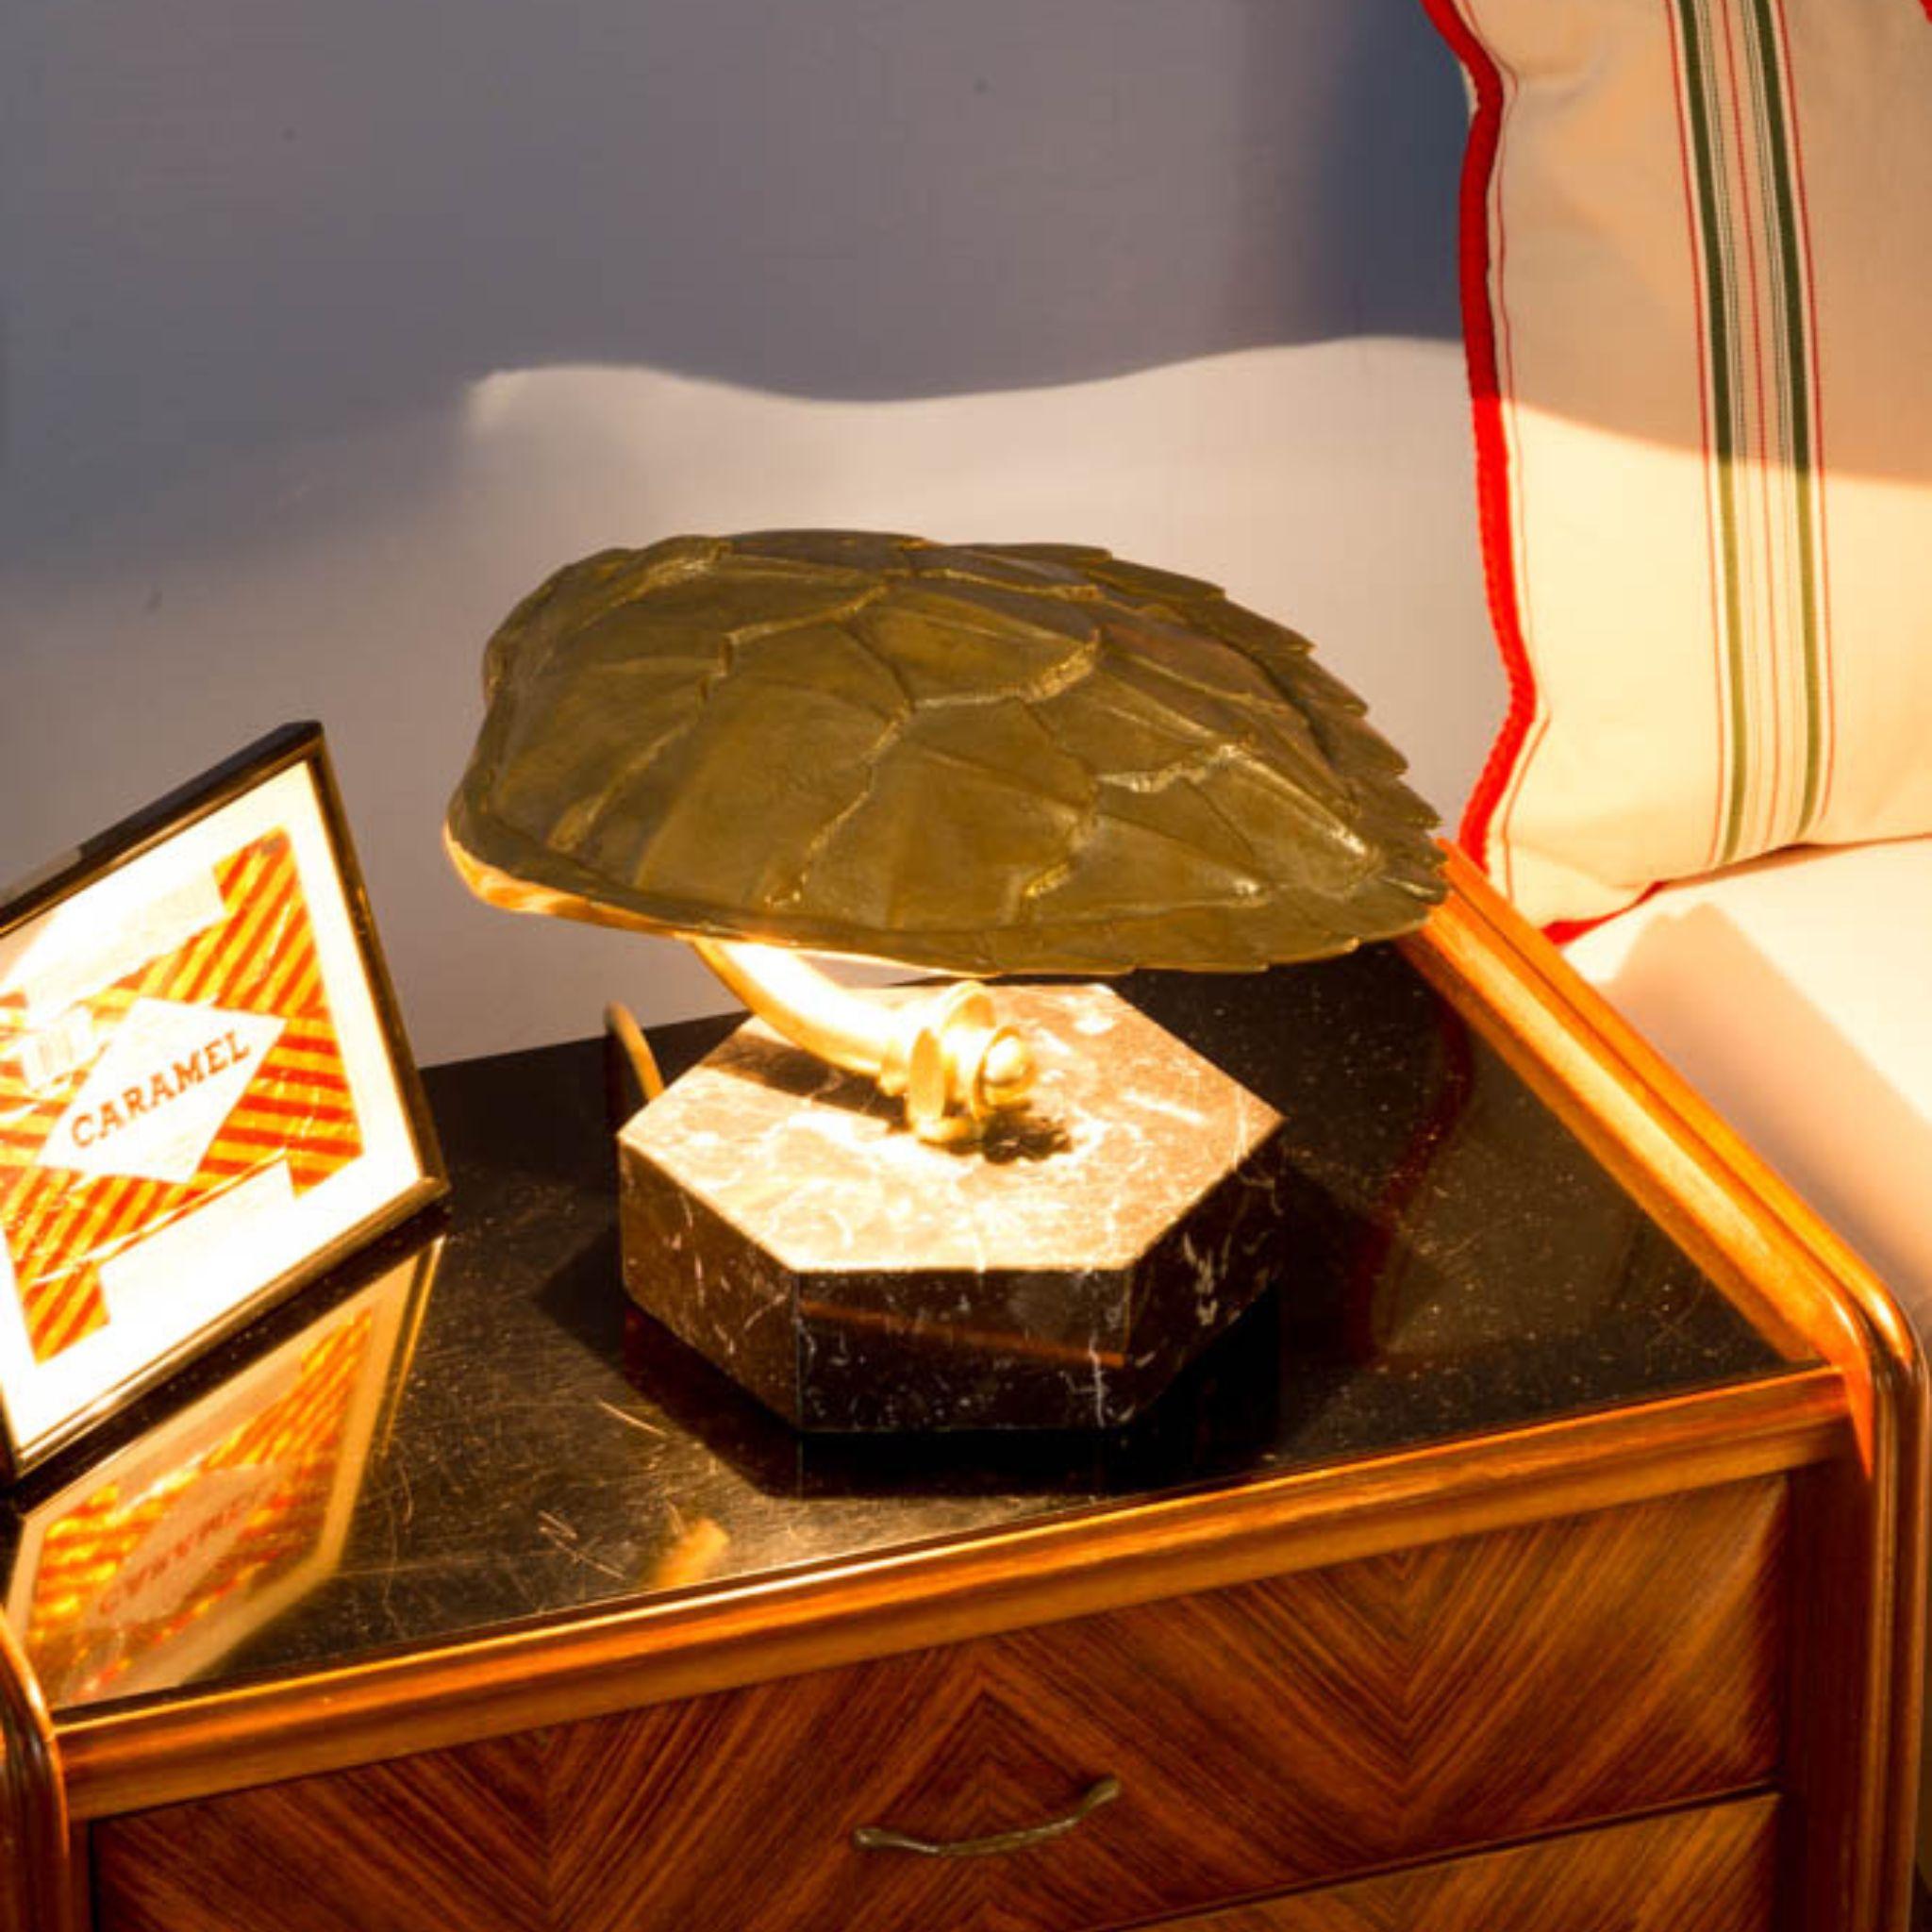 Cette lampe de table appartient à la ligne Nature de la collection Eclectic, elle présente une carapace de tortue en laiton moulé, finition naturelle, sur une base exagonale en marbre noir Marquinia. La lampe de table peut être personnalisée soit